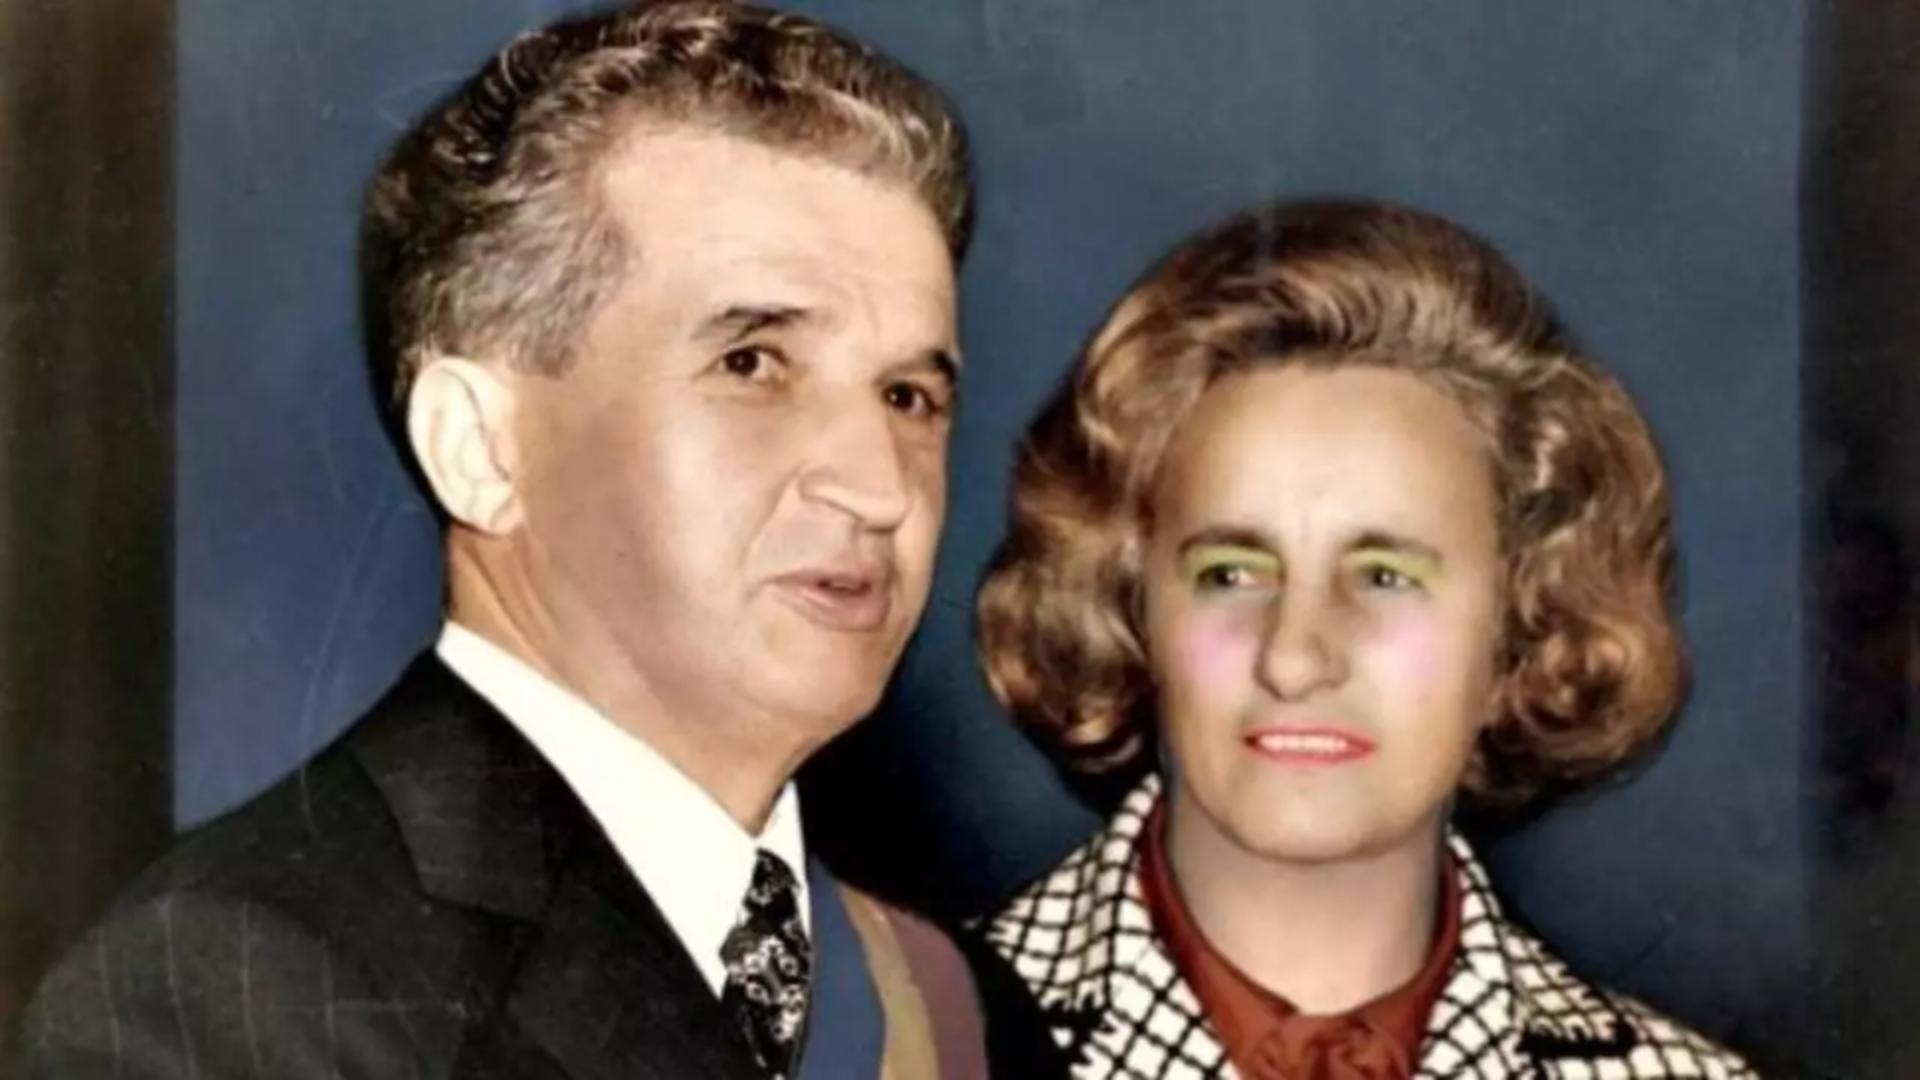 Obiectul găsit în geanta Elenei Ceaușescu imediat după execuție, care i-a șocat pe soldați